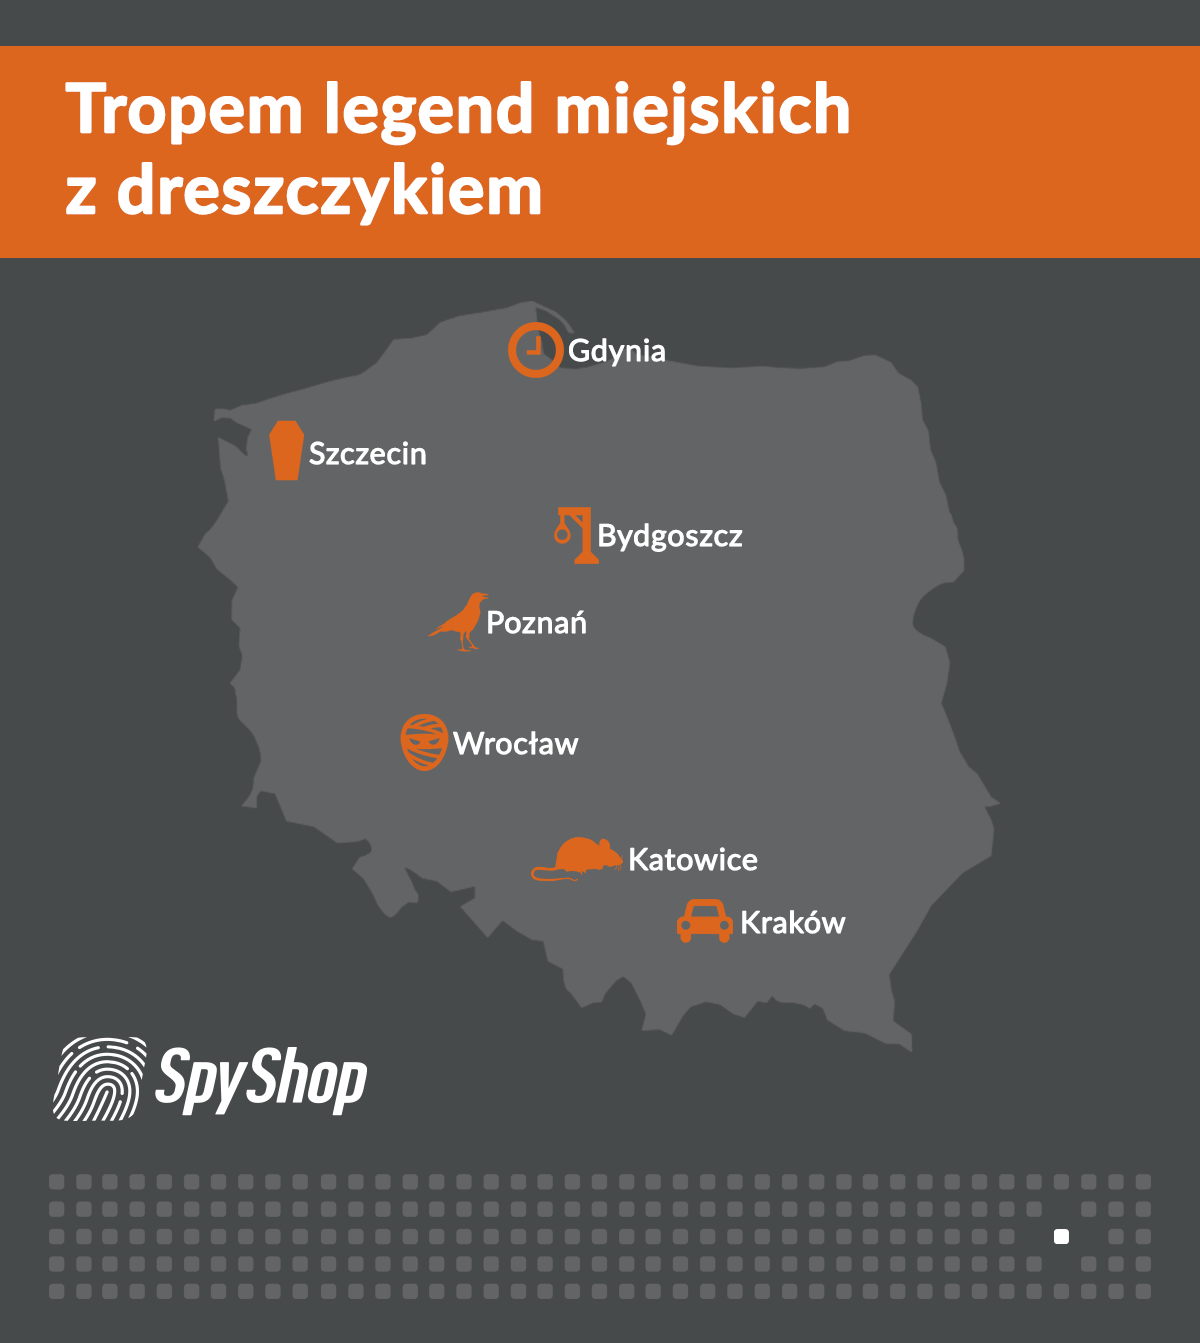 legendy miejskie miast Polski tropem sklepów spy shop